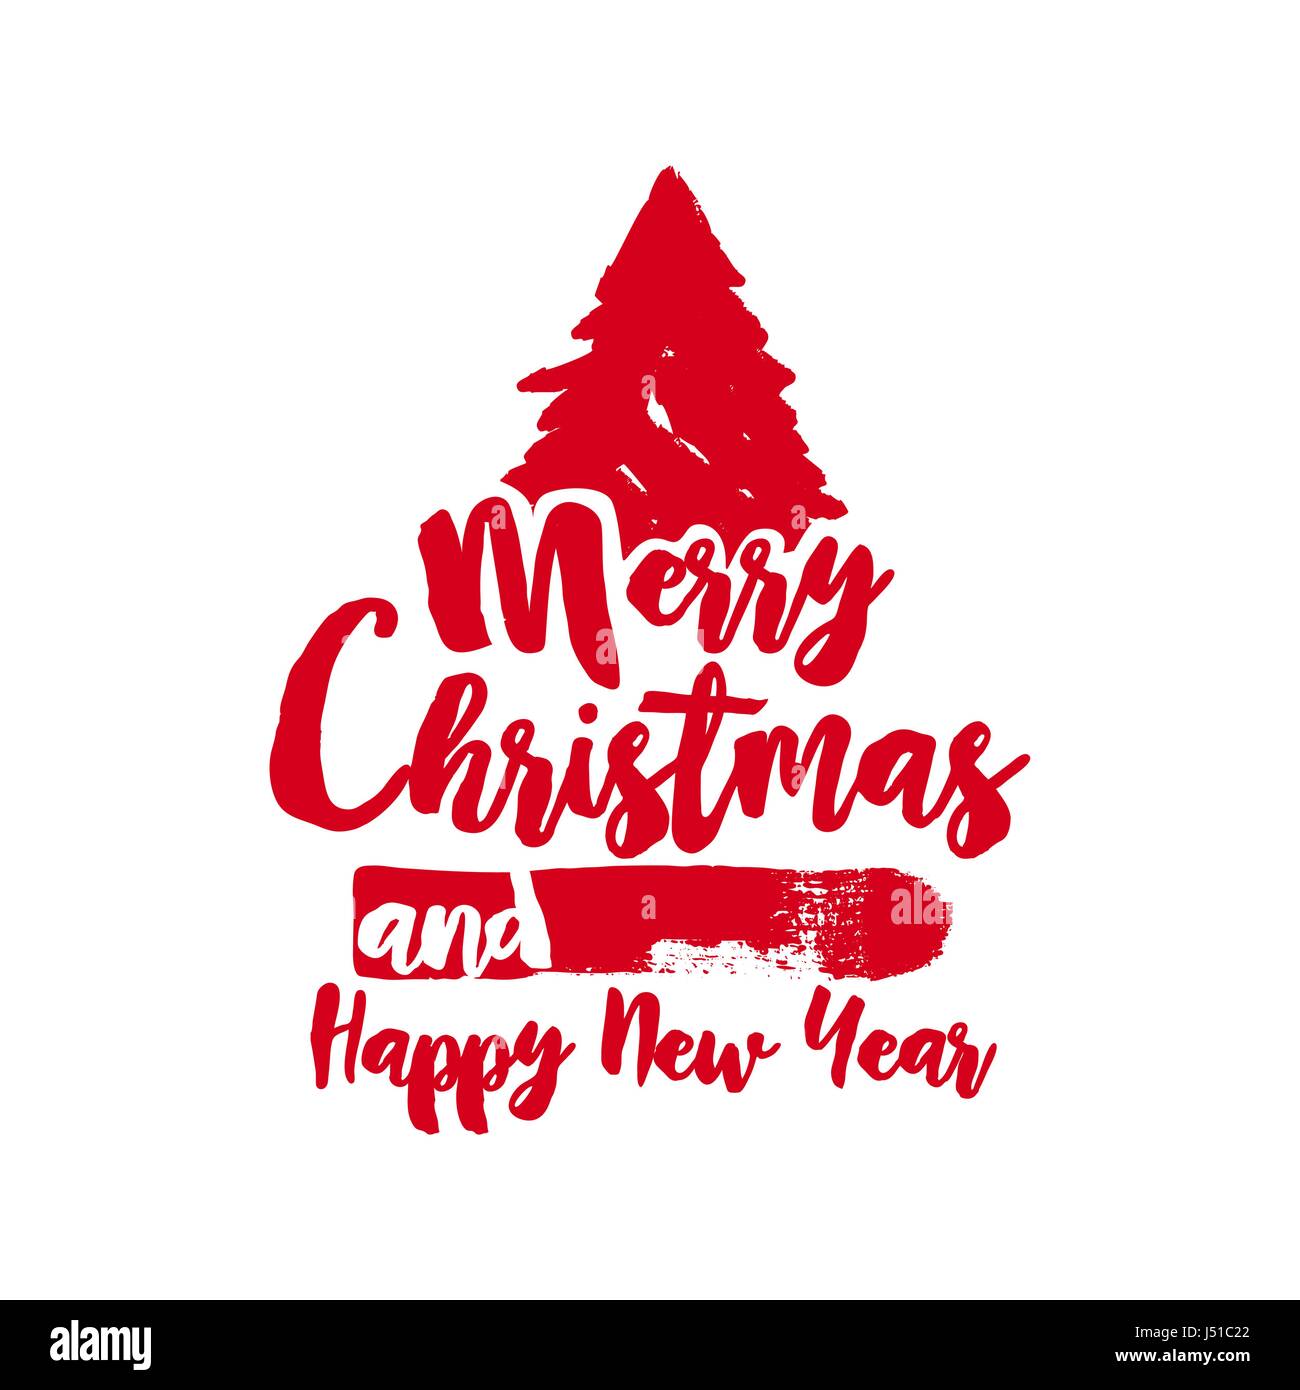 Joyeux Noël arbre grunge text quote, calligraphie design lettrage pour les fêtes. Typographie rouge créatifs font pinceau illustration. Vecteur EPS10 Illustration de Vecteur